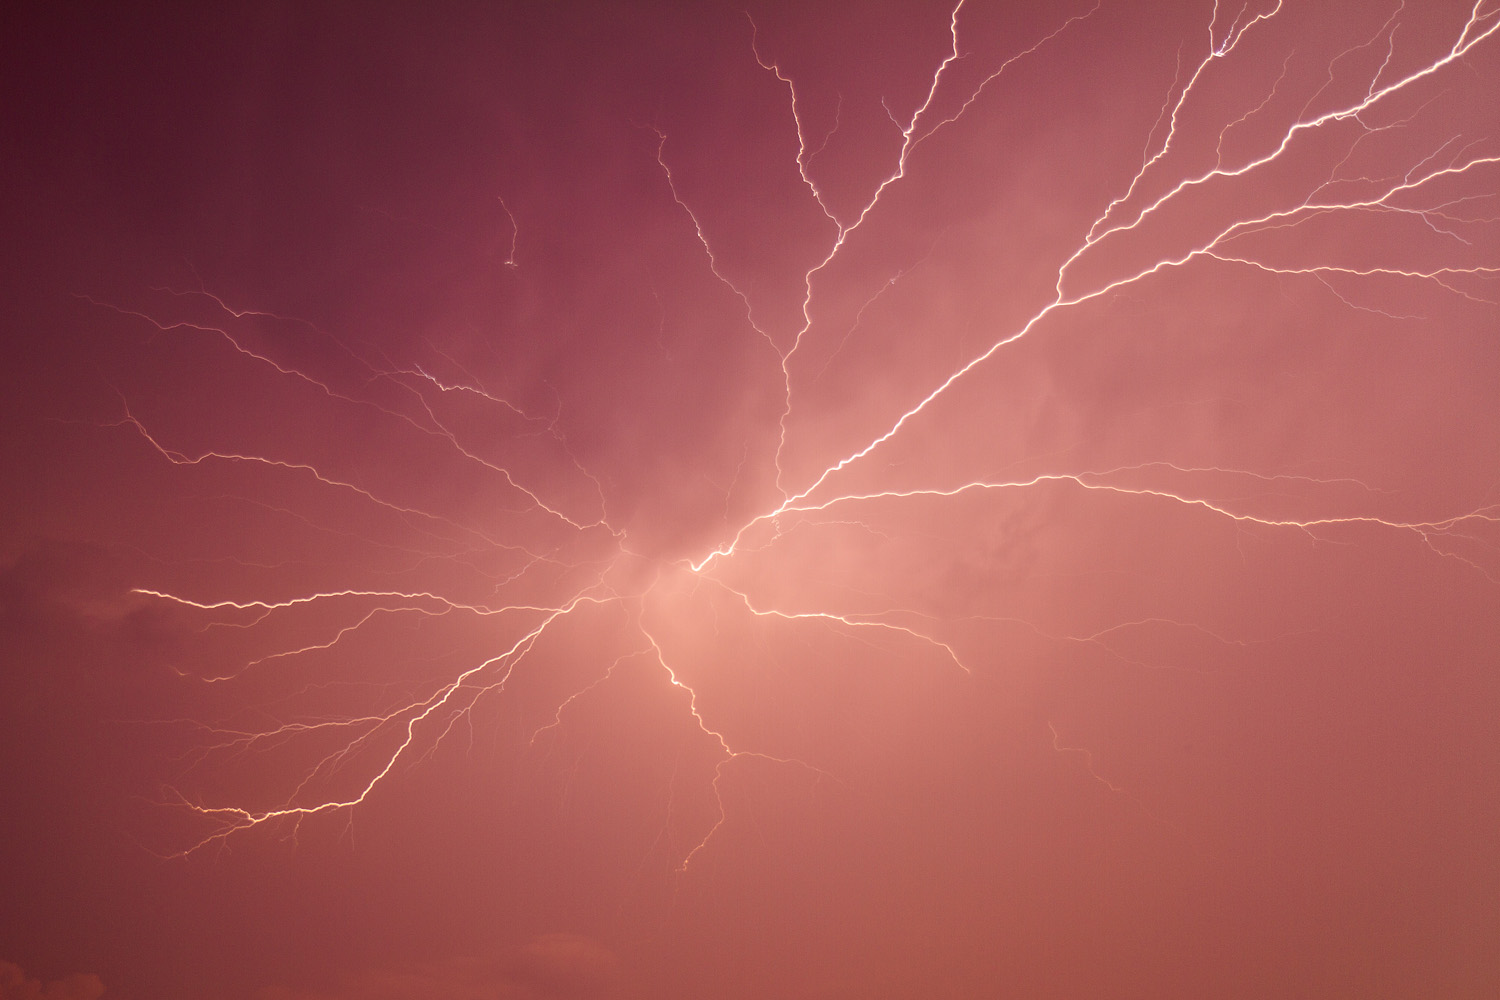 Lightning strike in magenta sky via DoubleStrike.com